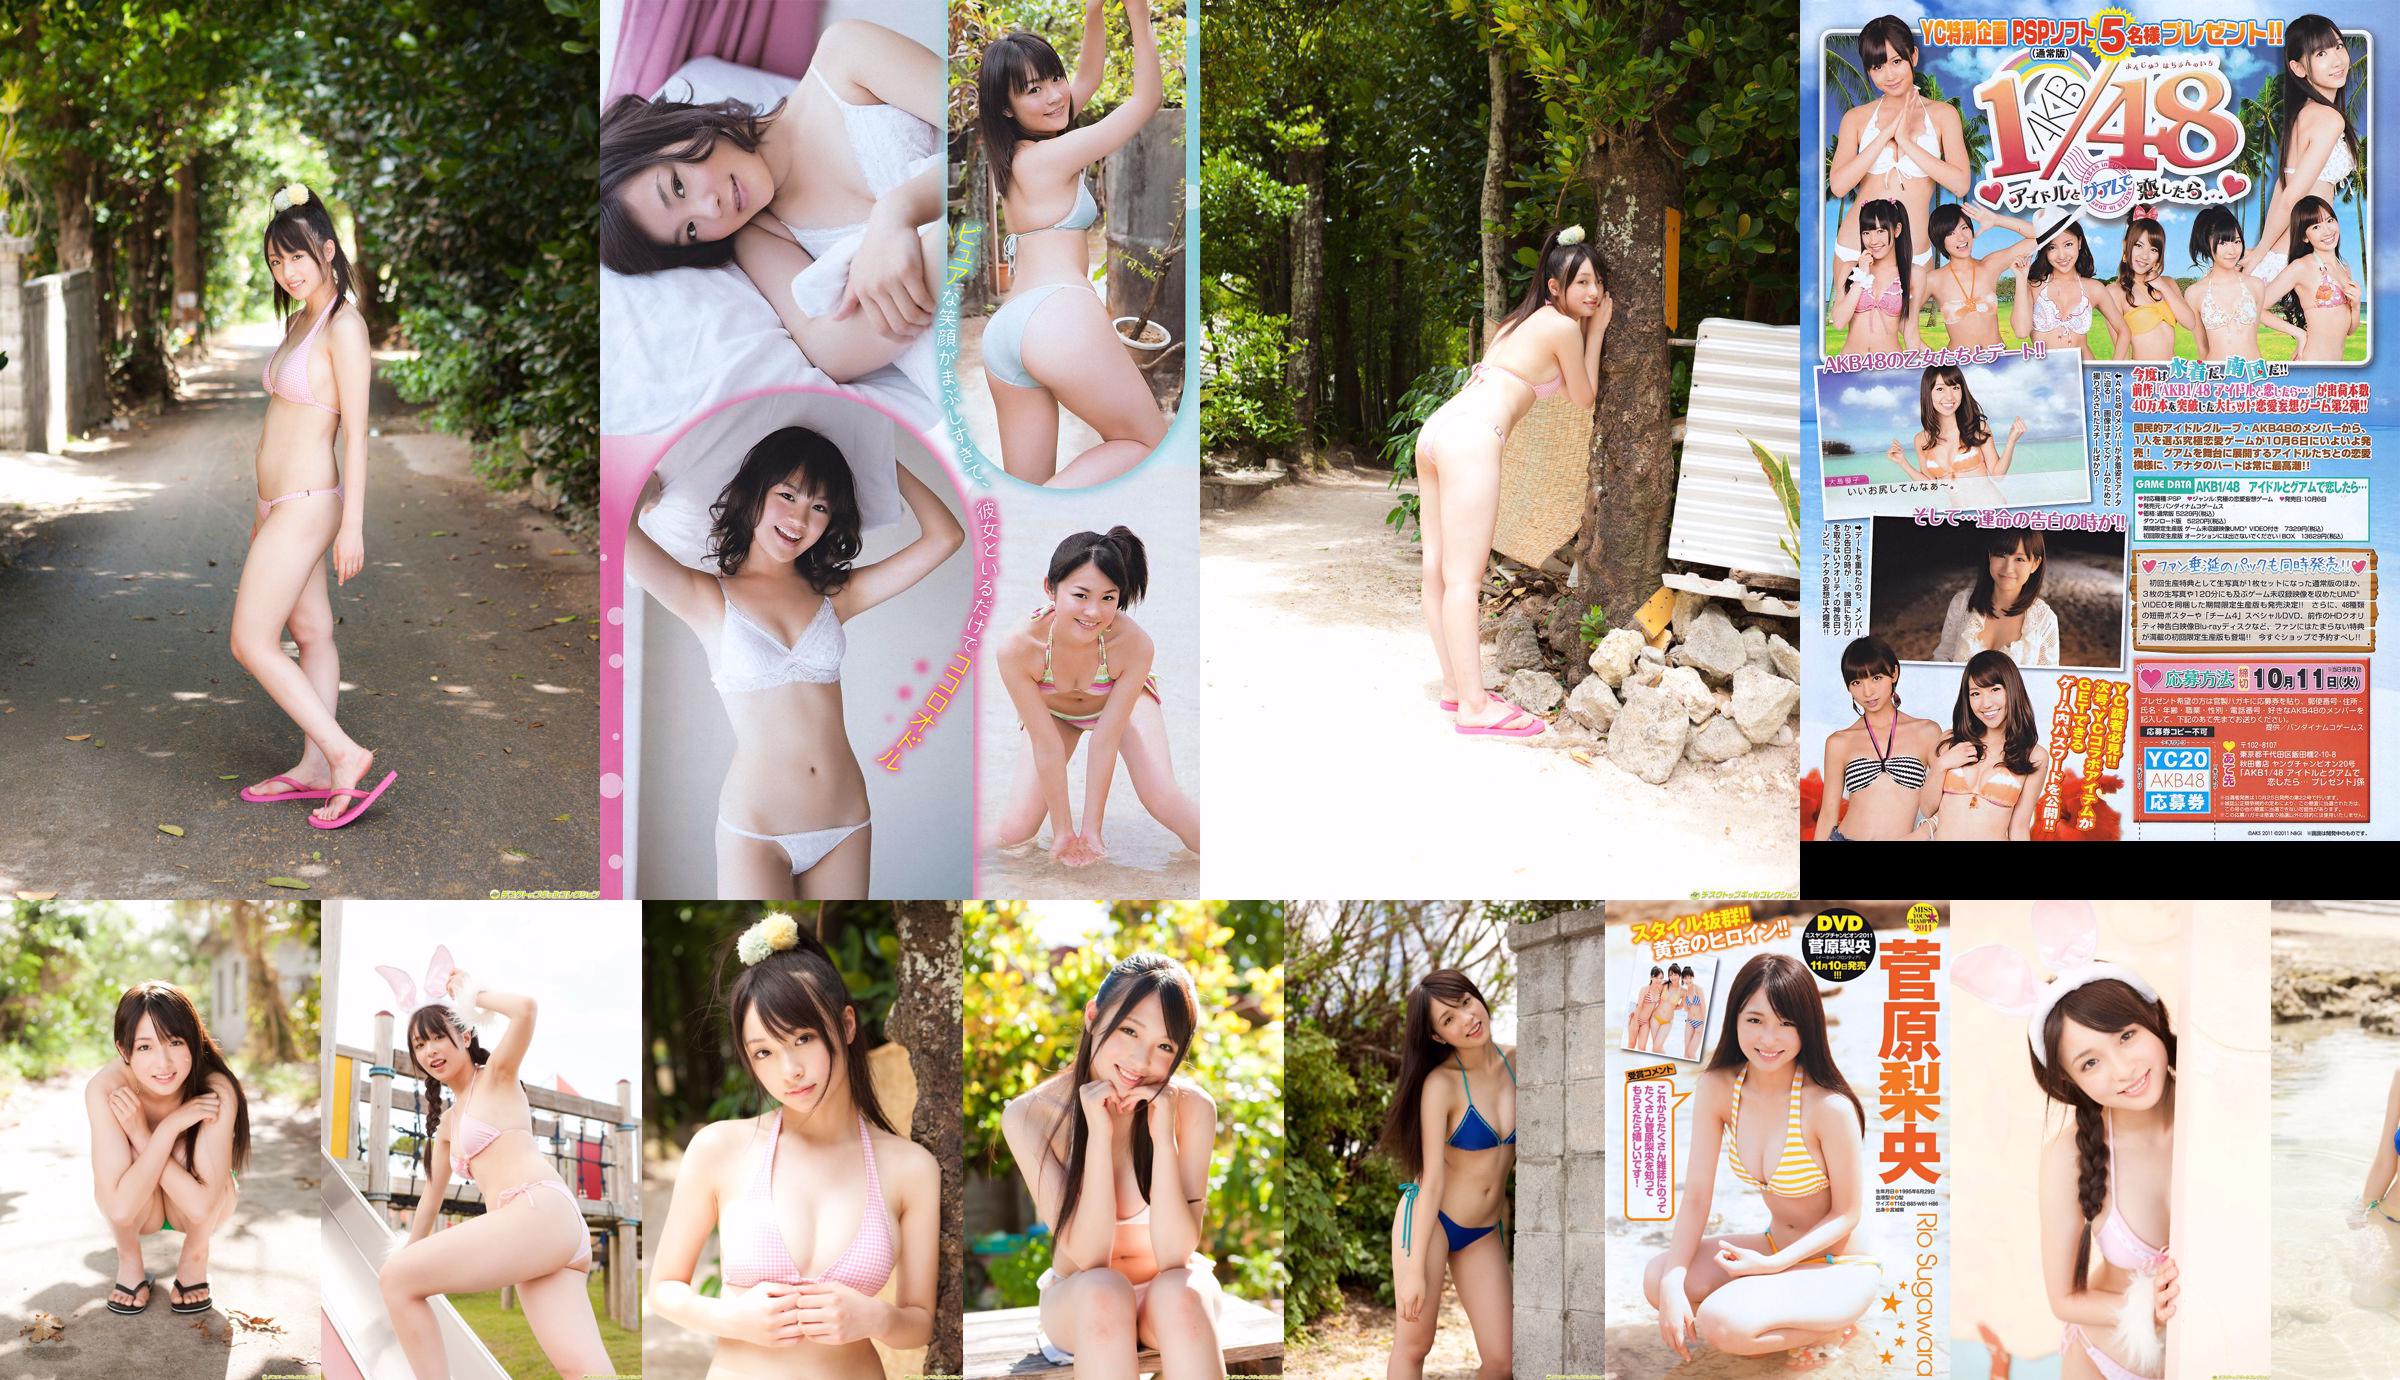 [Młody mistrz] Sugawara Risa, Horikawa Mikako, Matsushima no lub 2011 nr 20 Photo Magazine No.268ba4 Strona 1